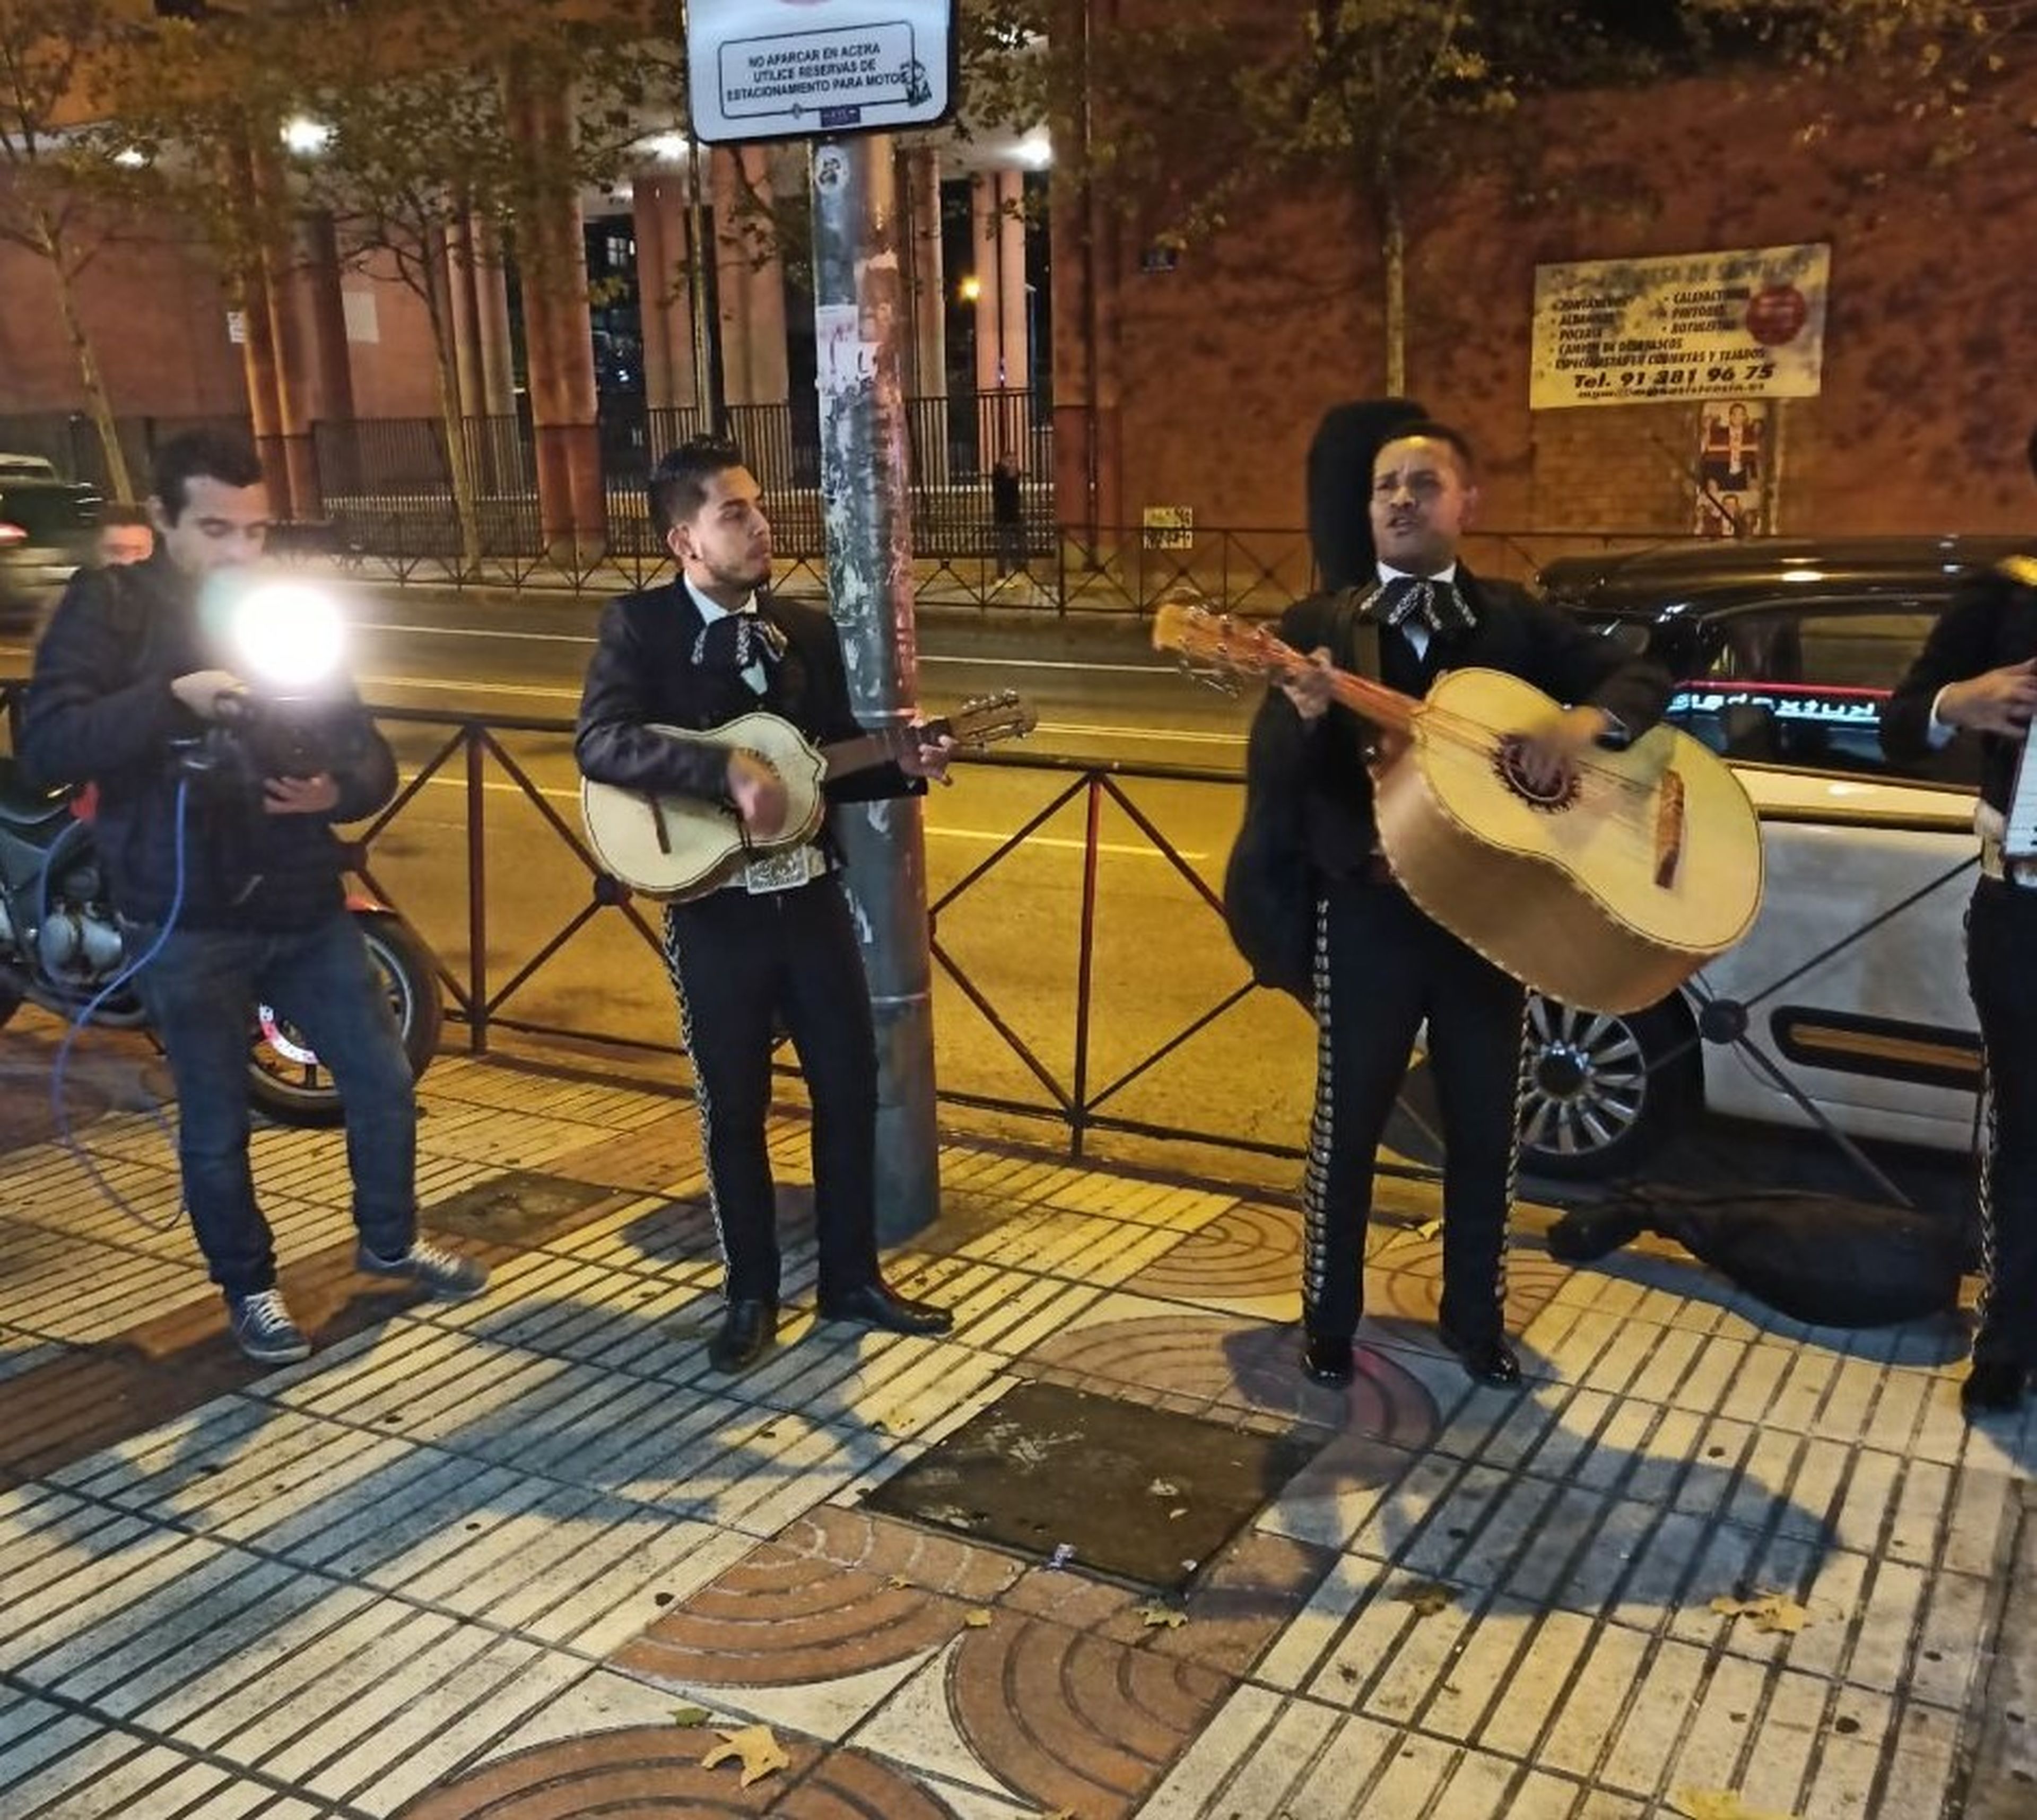 Los mariachis de Forocoches cantando frente a la sede de Ciudadanos.